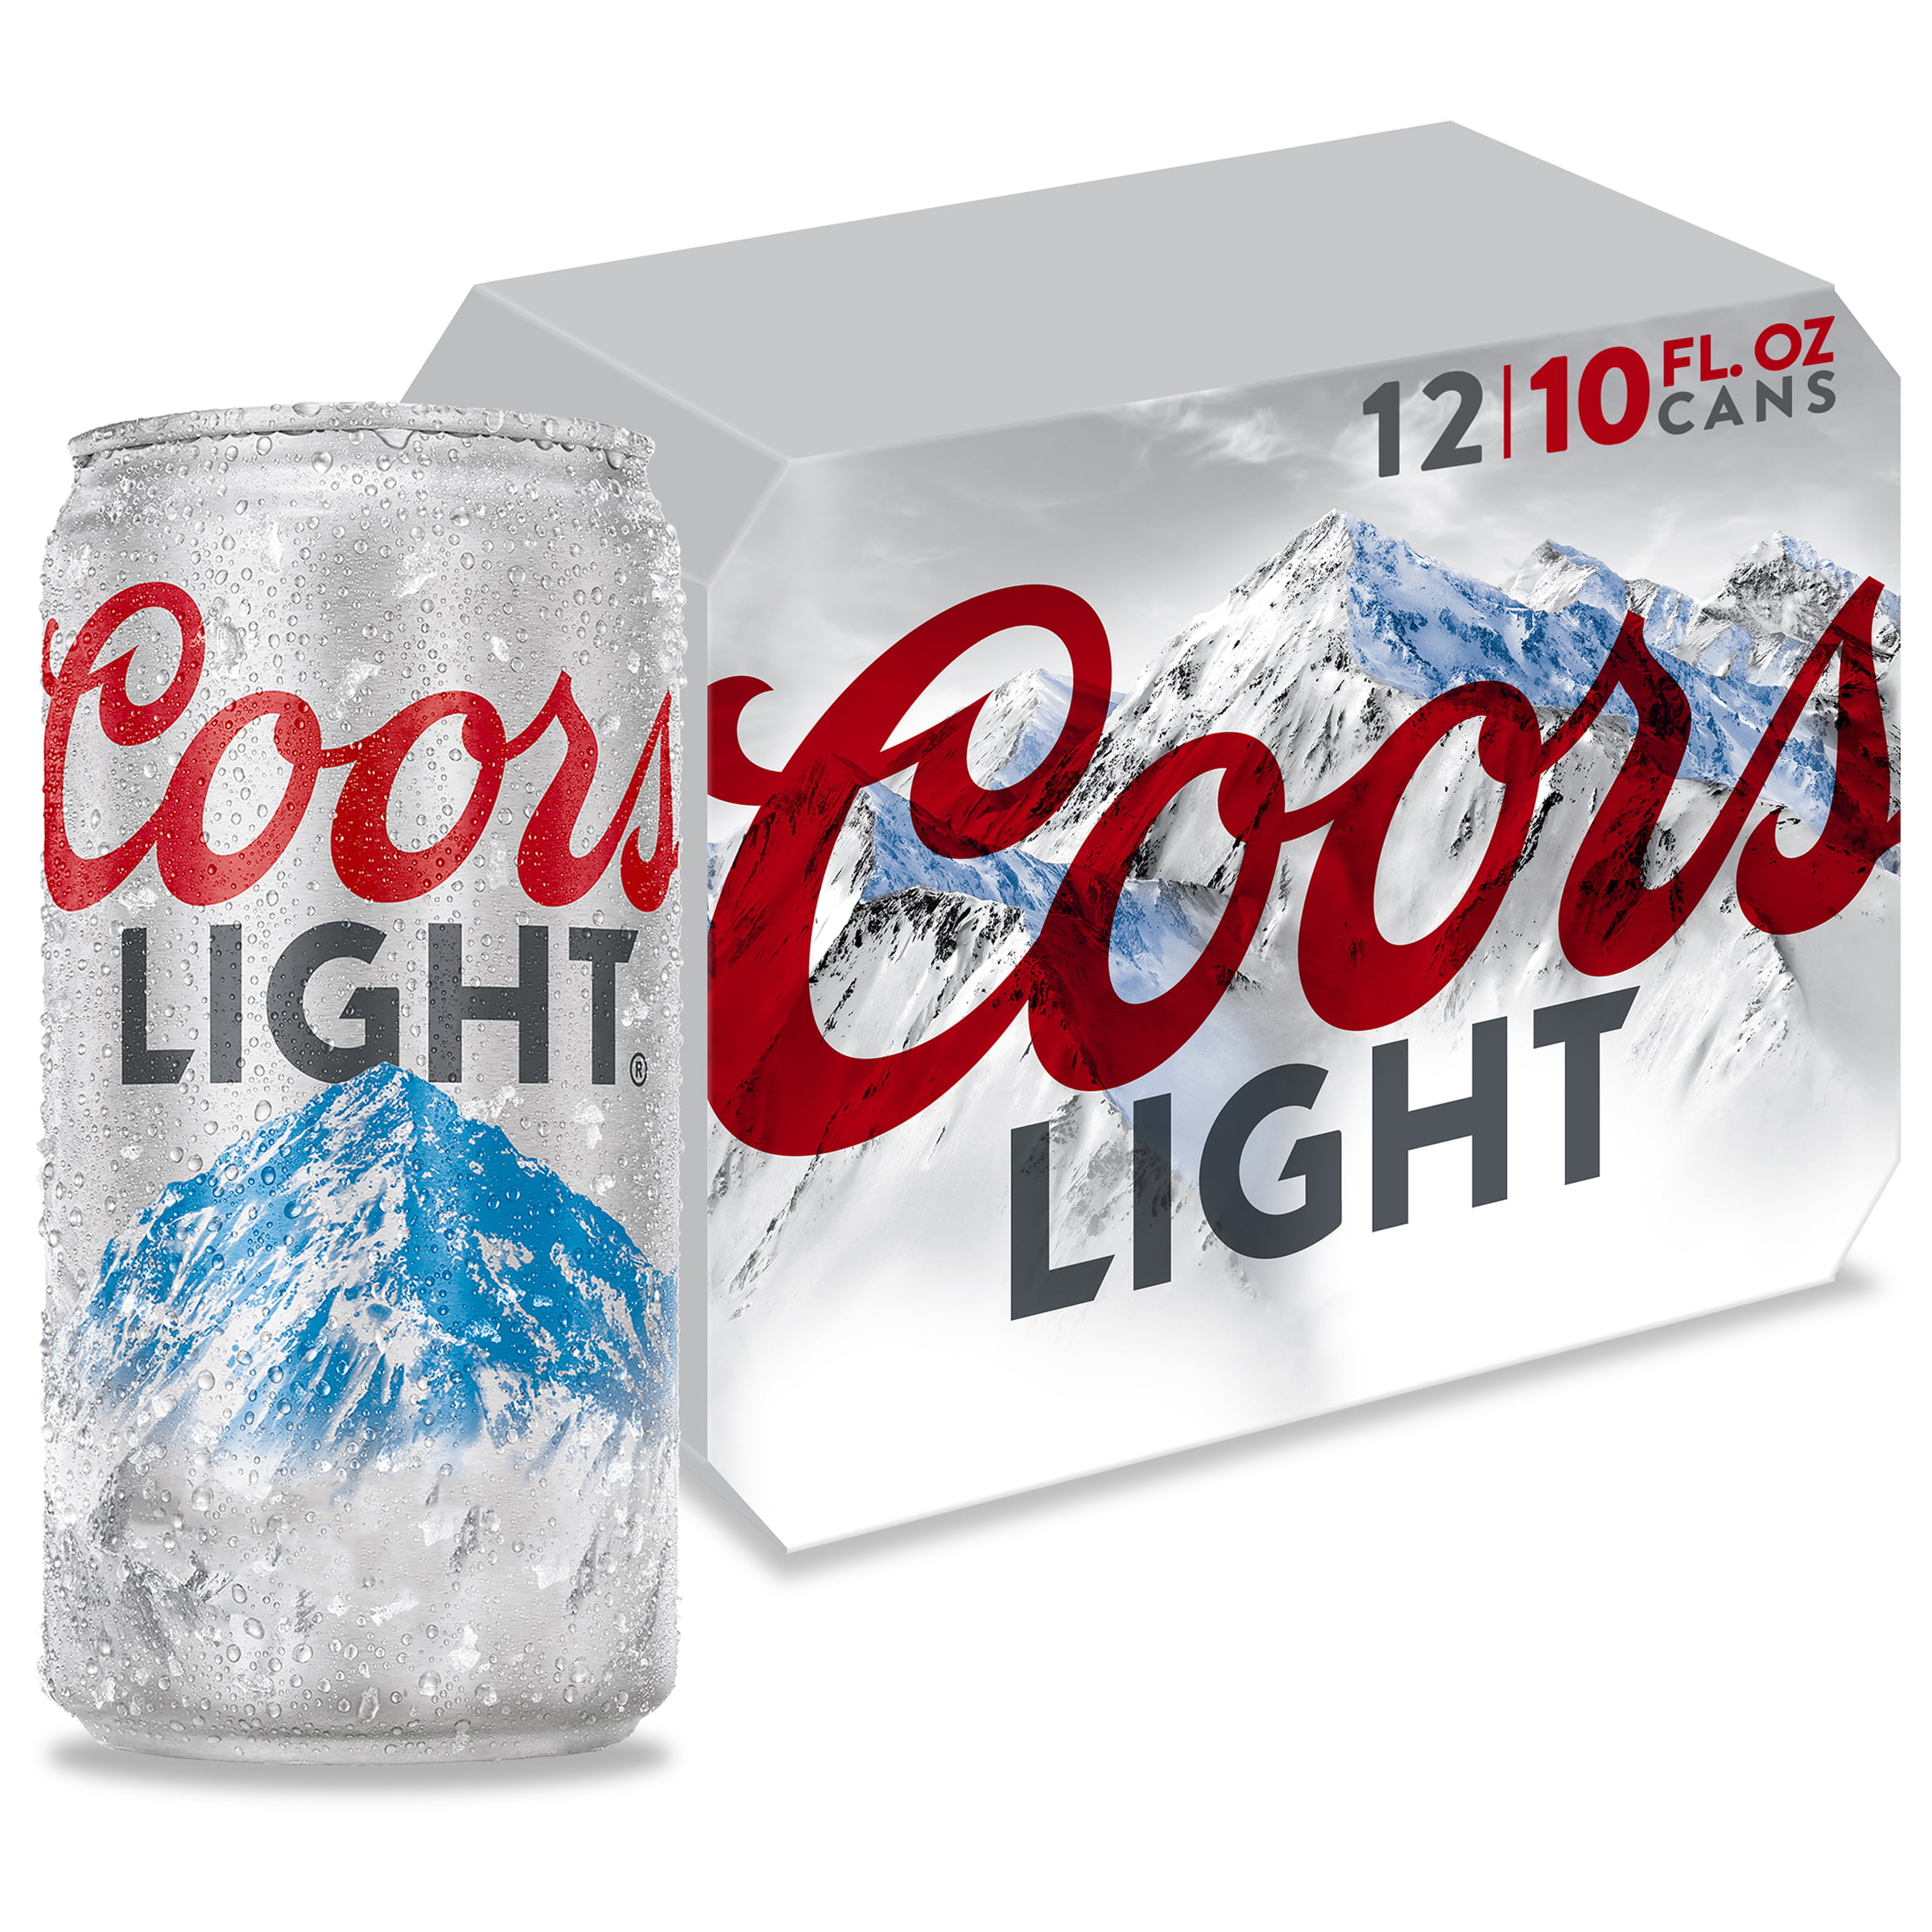 Coors Light Light Beer 12 Pack 10 Fl Oz Cans - Beer Poster.